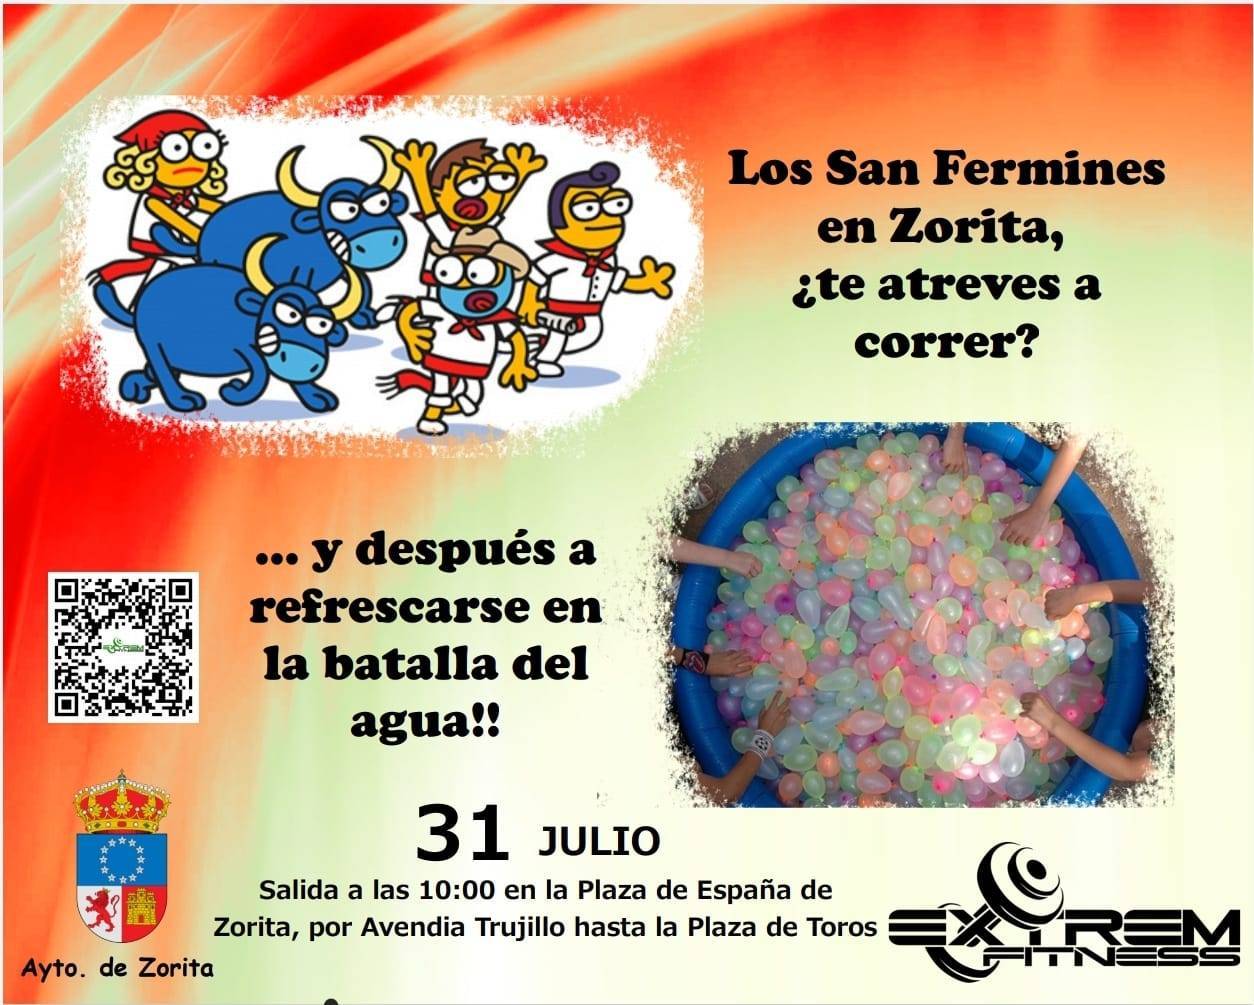 Los San Fermines (2021) - Zorita (Cáceres)